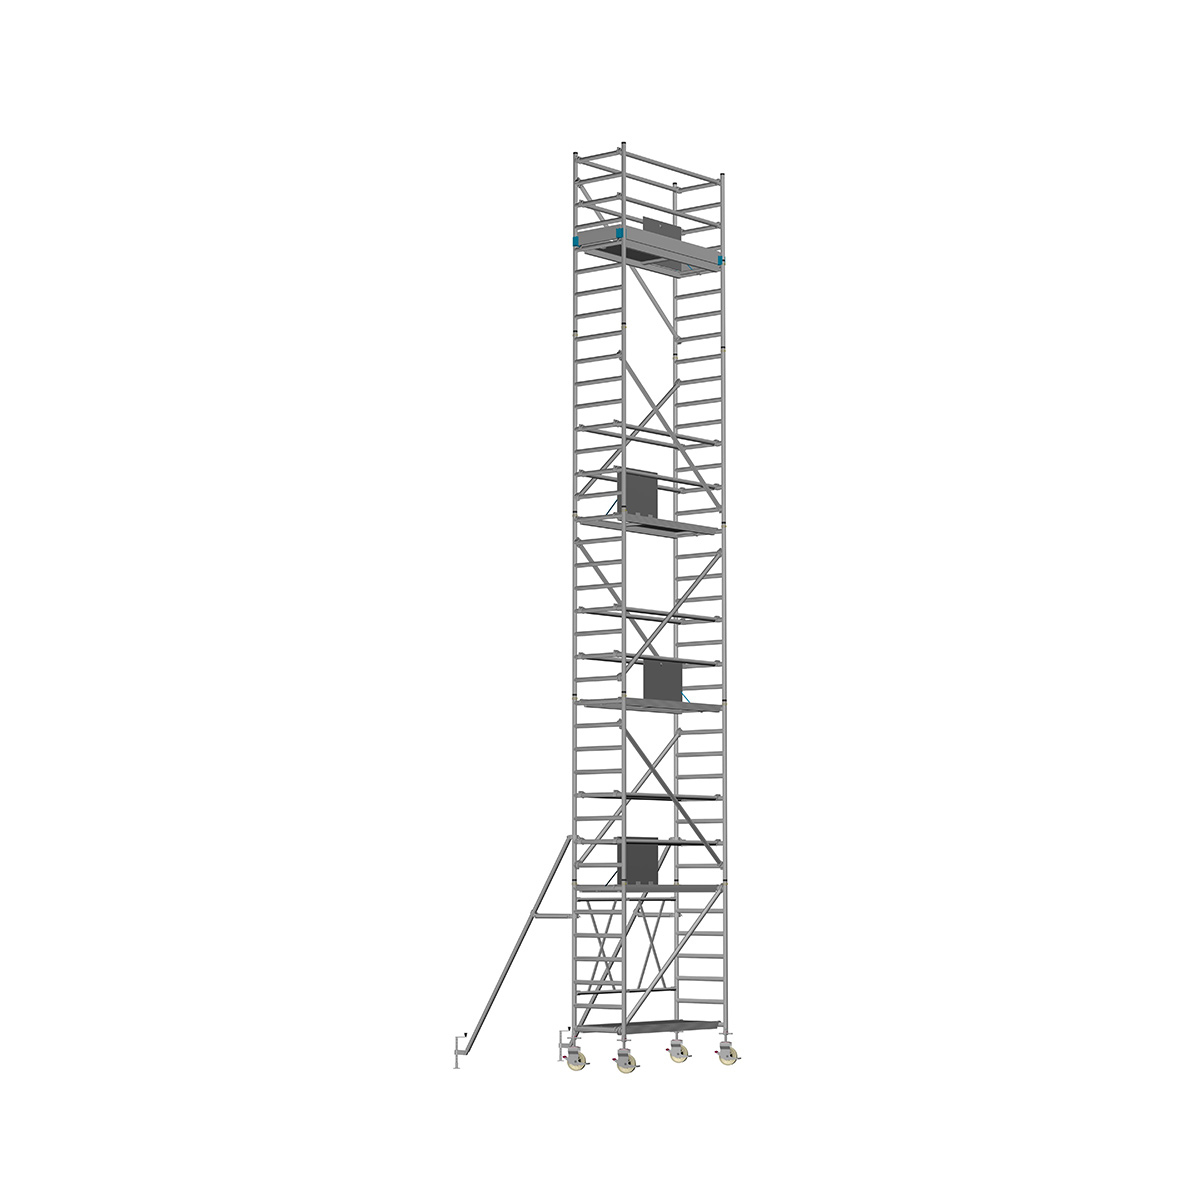 Chiemsee 1 PROFI - Länge: 1,83 m - Breite: 0,74 m, Standhöhe 1,00 m